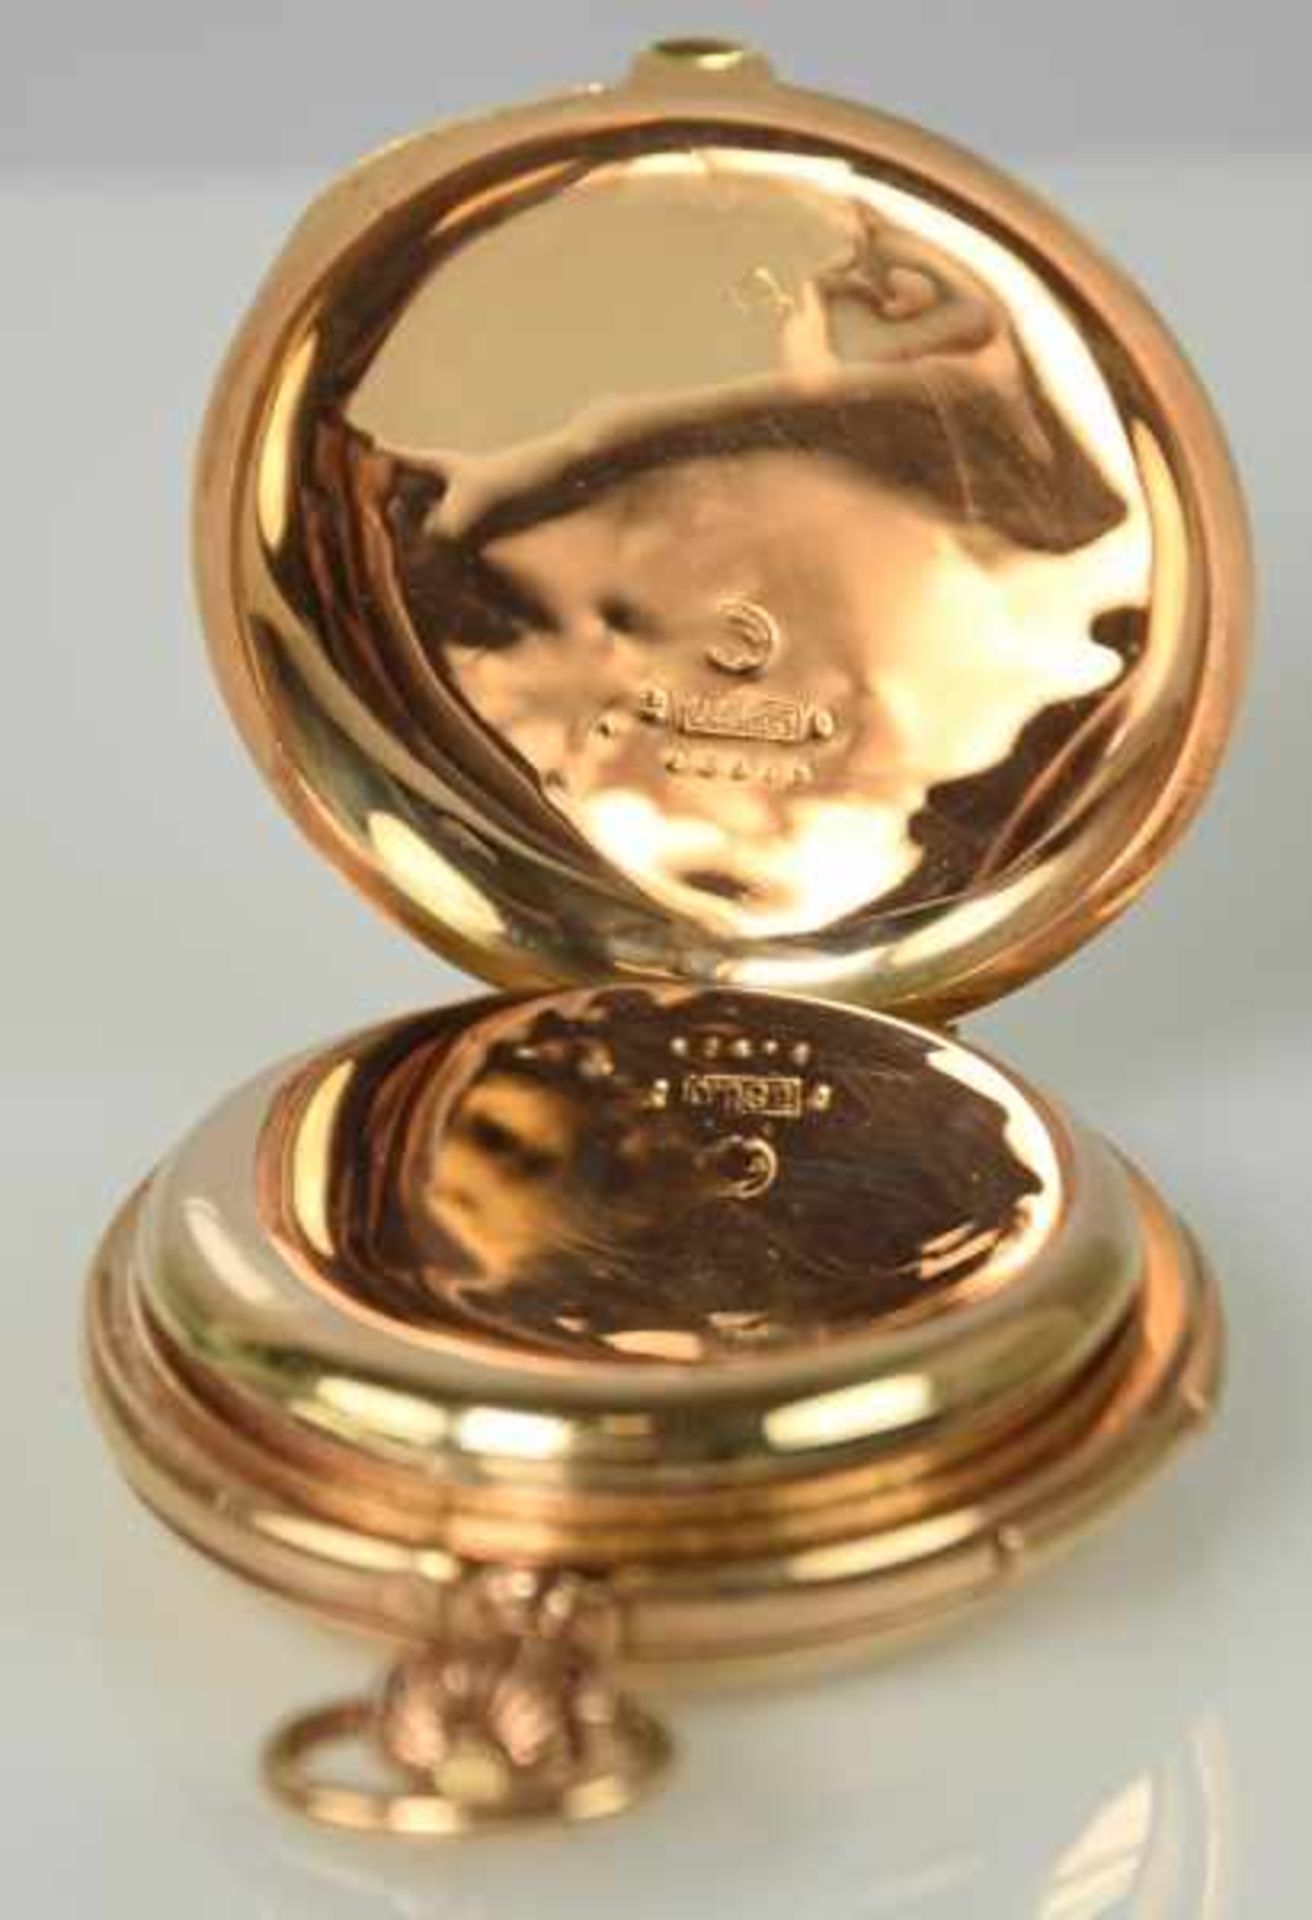 SAVONETTE Goldgehäuse 14ct mit polierten Deckeln, Gold-Zwischendeckel, Emailziffernblatt mit - Bild 4 aus 4